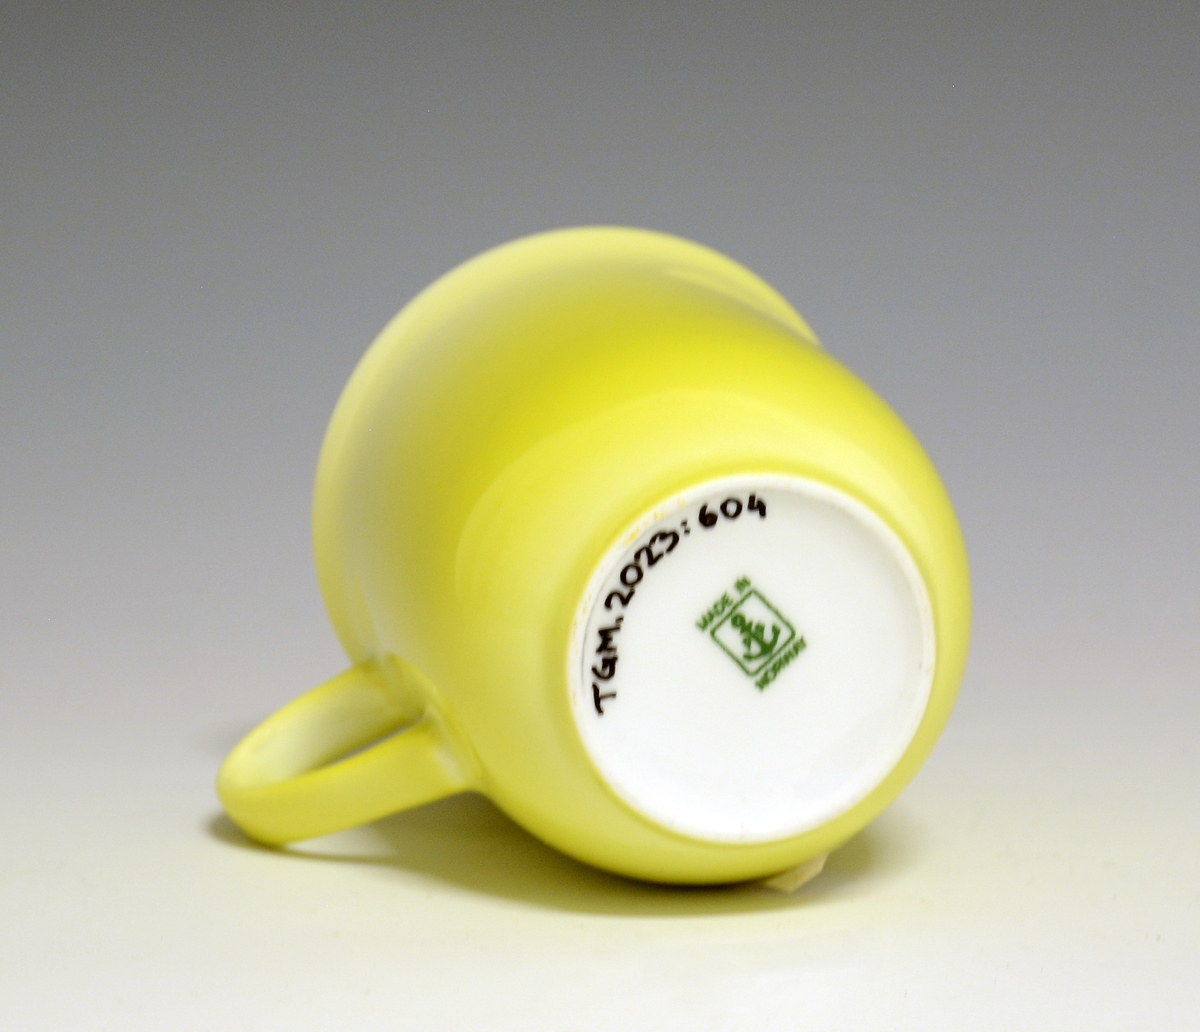 Krus av porselen med  hvit glasur. Heldekkende gul utvendig, innvendig "XL" med brede "penselstrøk". 
Modell: 2681